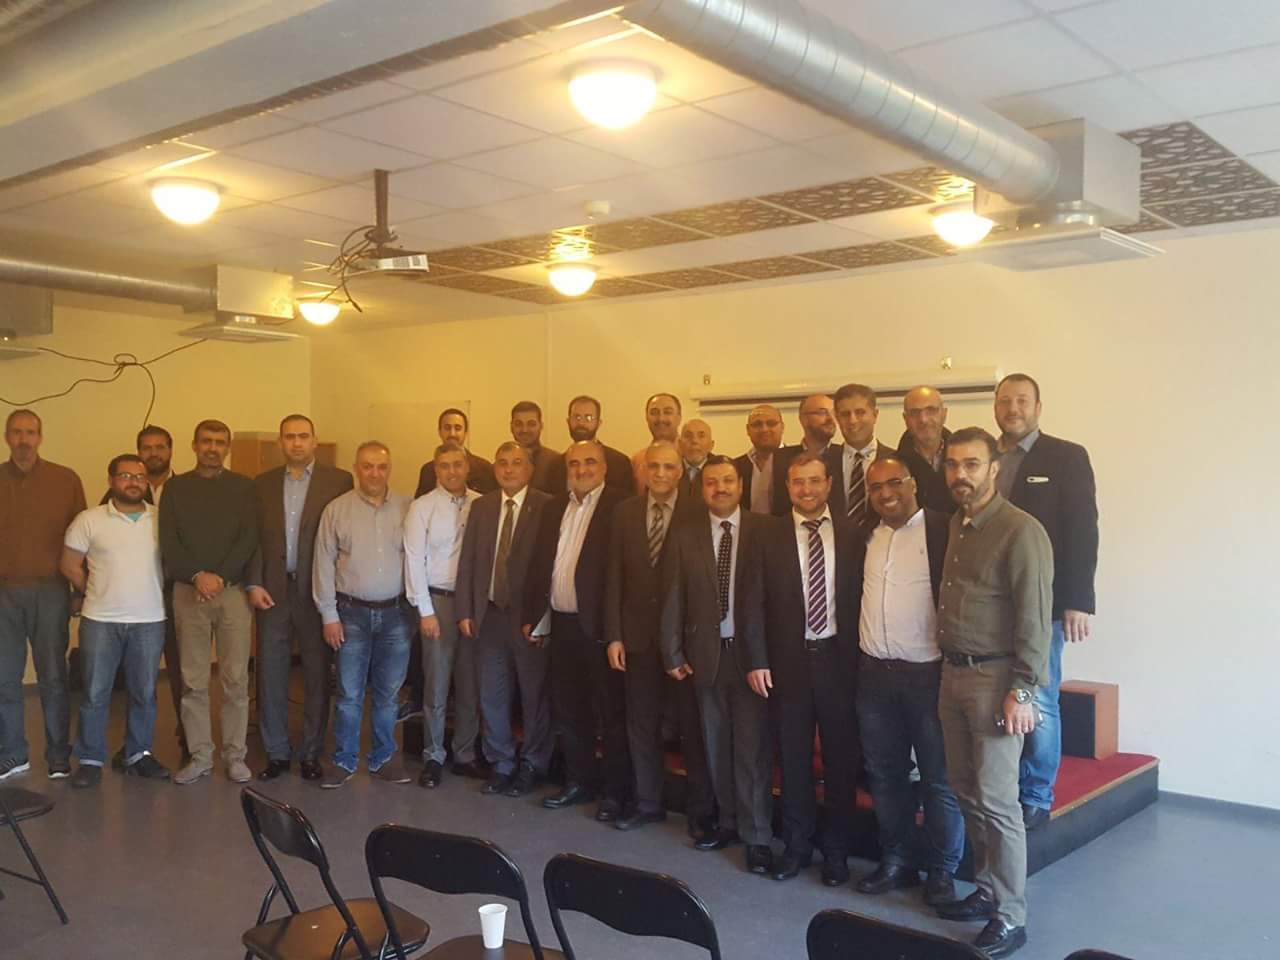 تجمع المهندسين الفلسطينيين في السويد يعقدون مؤتمرهم الأول